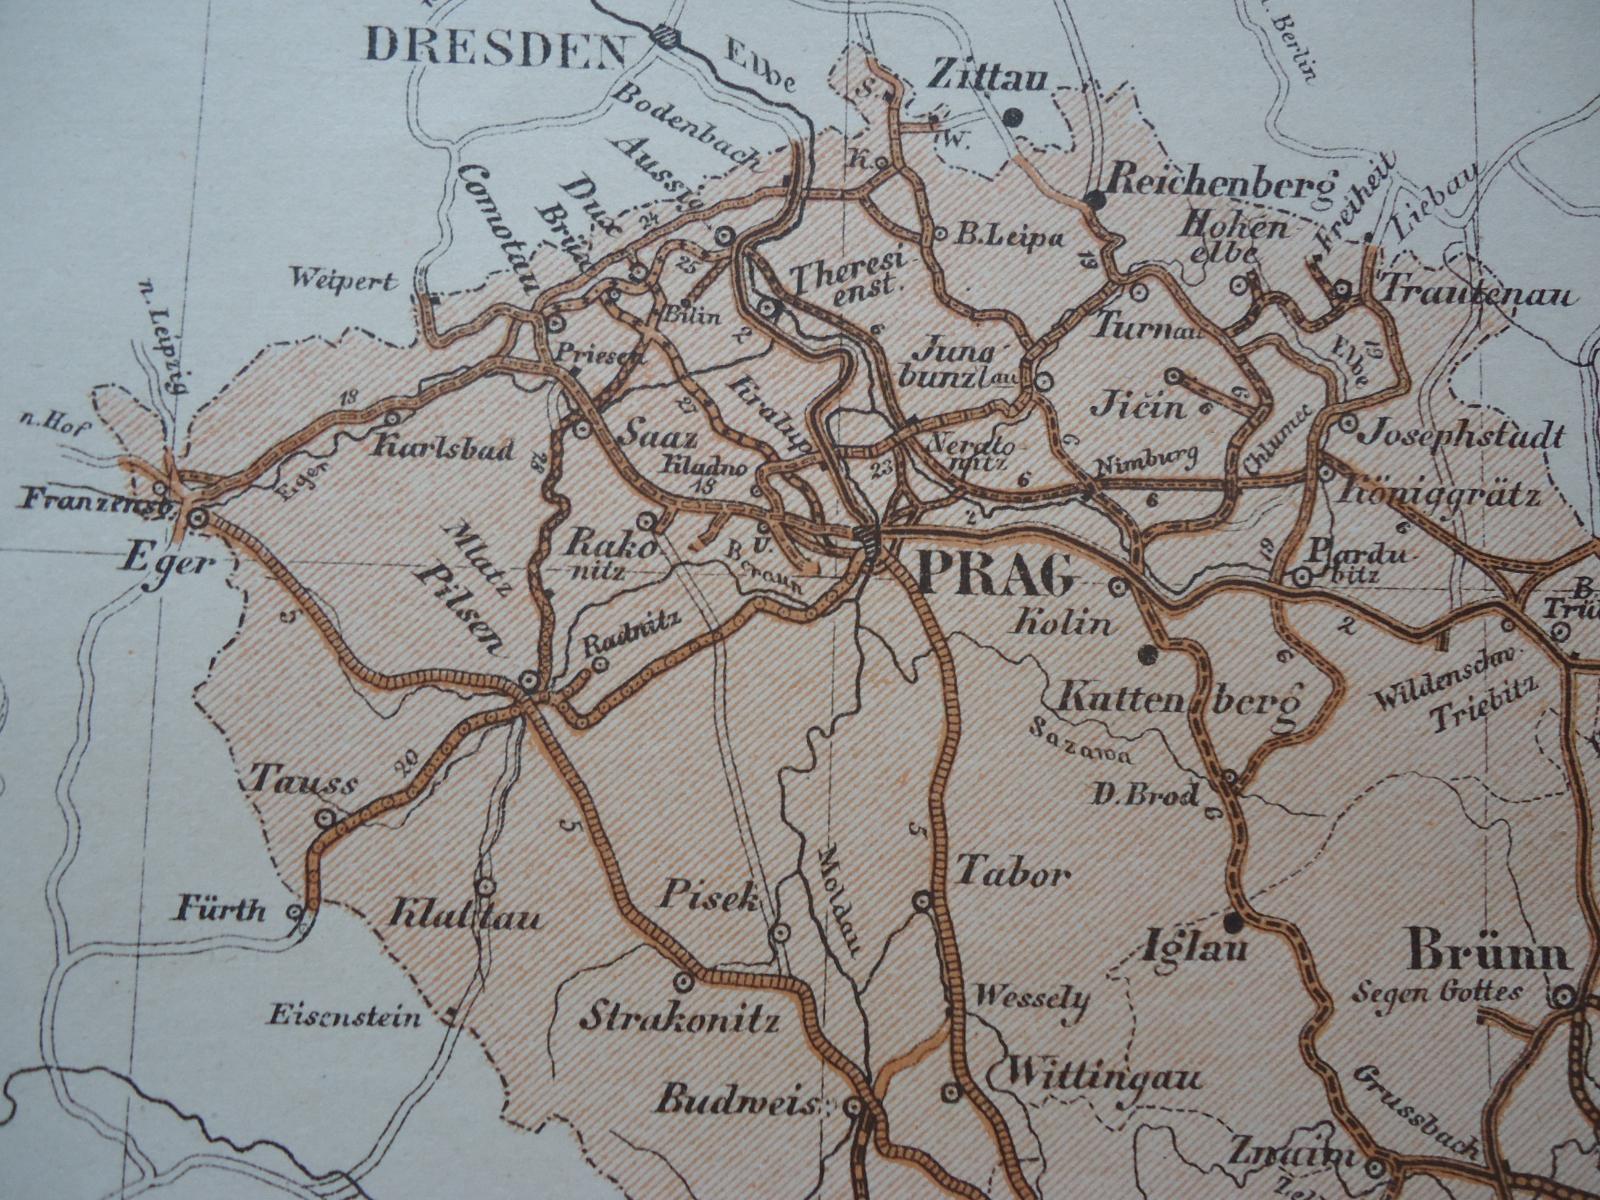 Die Eisenbahnen der Österreich-Ungarischen Monarchie - Mapy a veduty Evropa